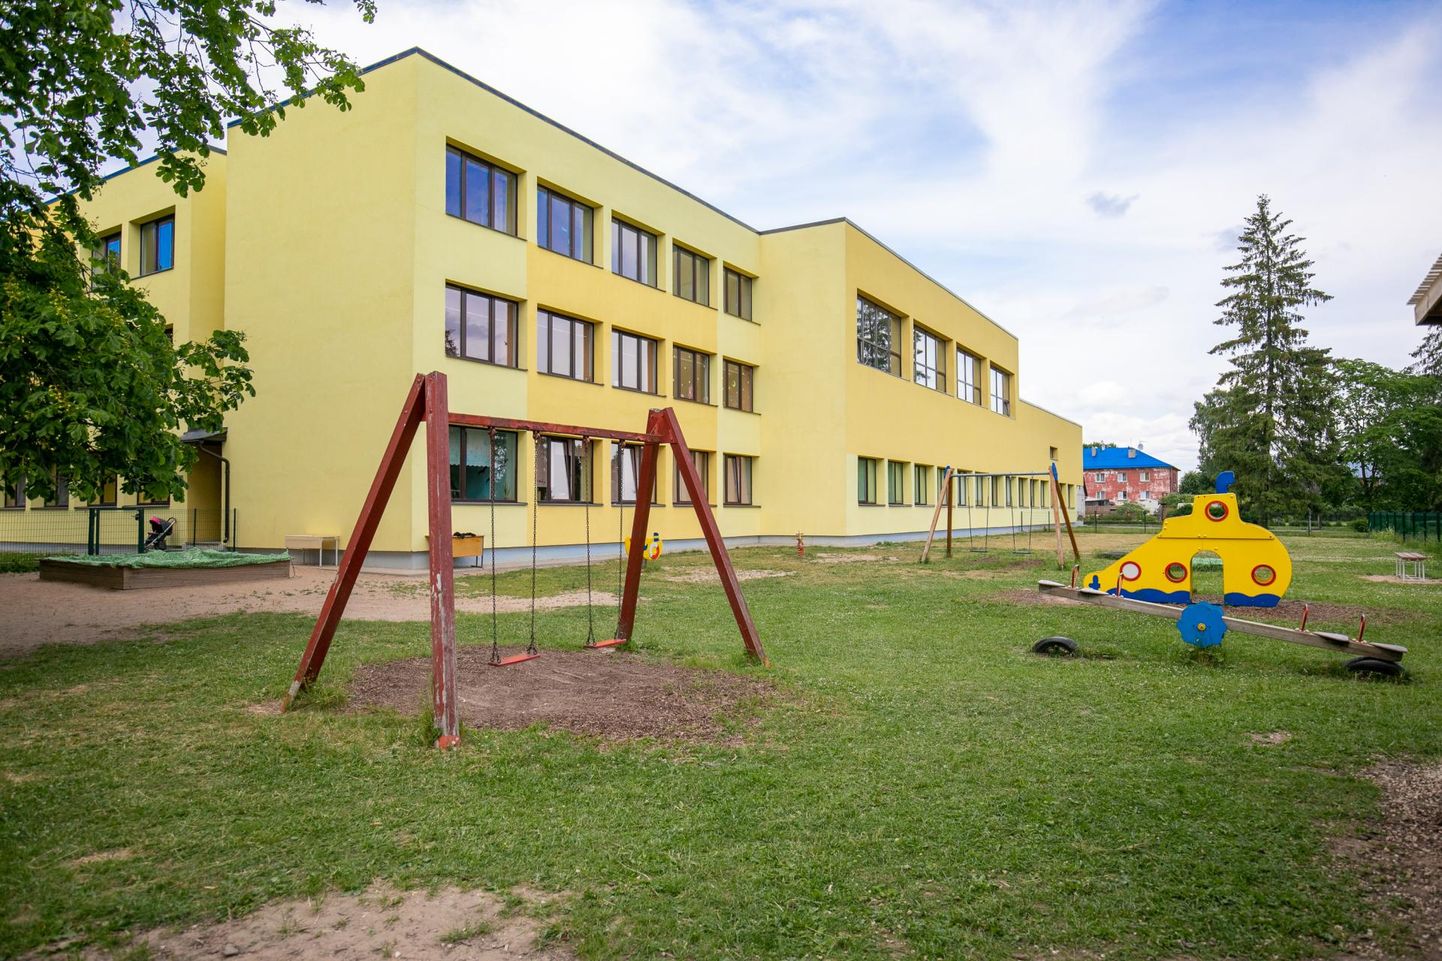 Tapa vene põhikoolis, mis tõenäoliselt hakkab sügisest kandma keelekümbluskooli nime, asuvad õppima ka eesti lapsed.